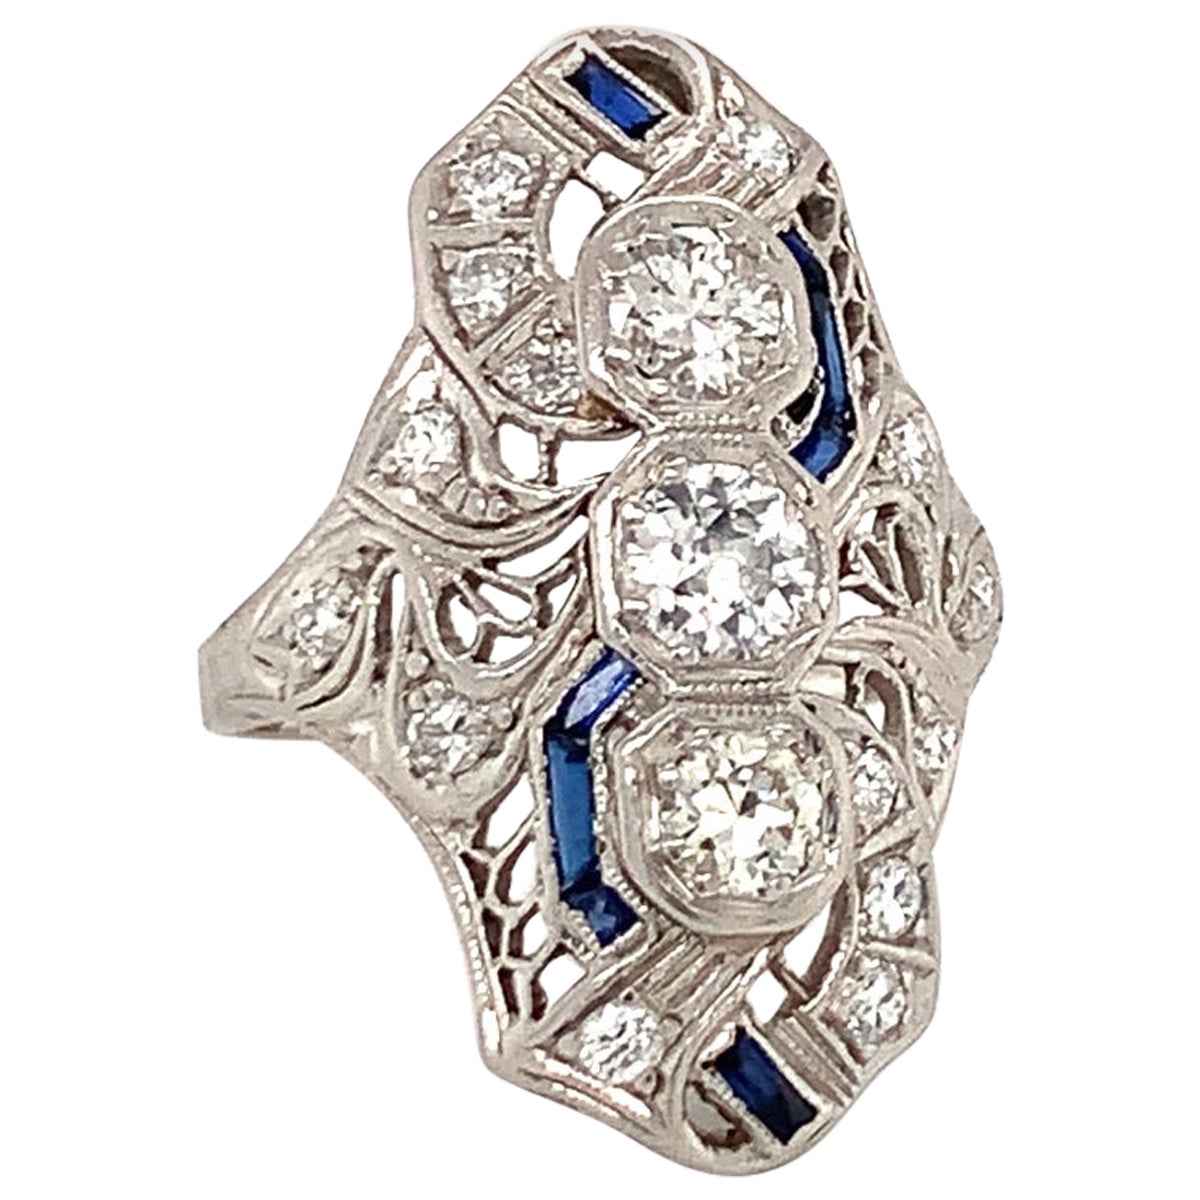 Art Deco Diamond Platinum Filigree Ring, circa 1920s